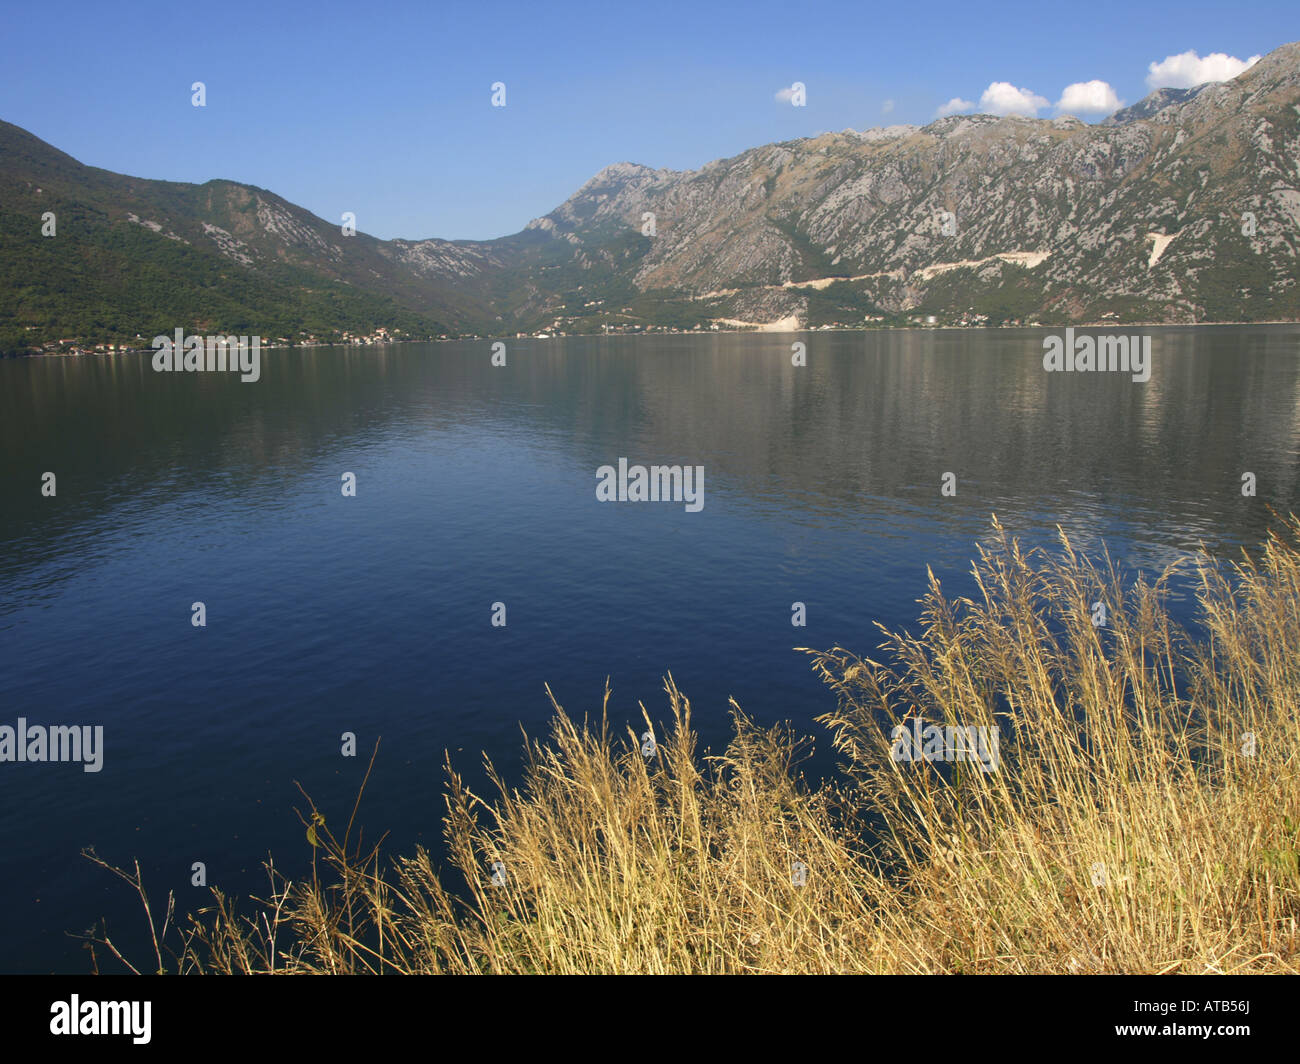 smilograss (Oryzopsis miliacea, Piptatherum miliaceum), Bay of Kotor, Serbia and Montenegro Stock Photo